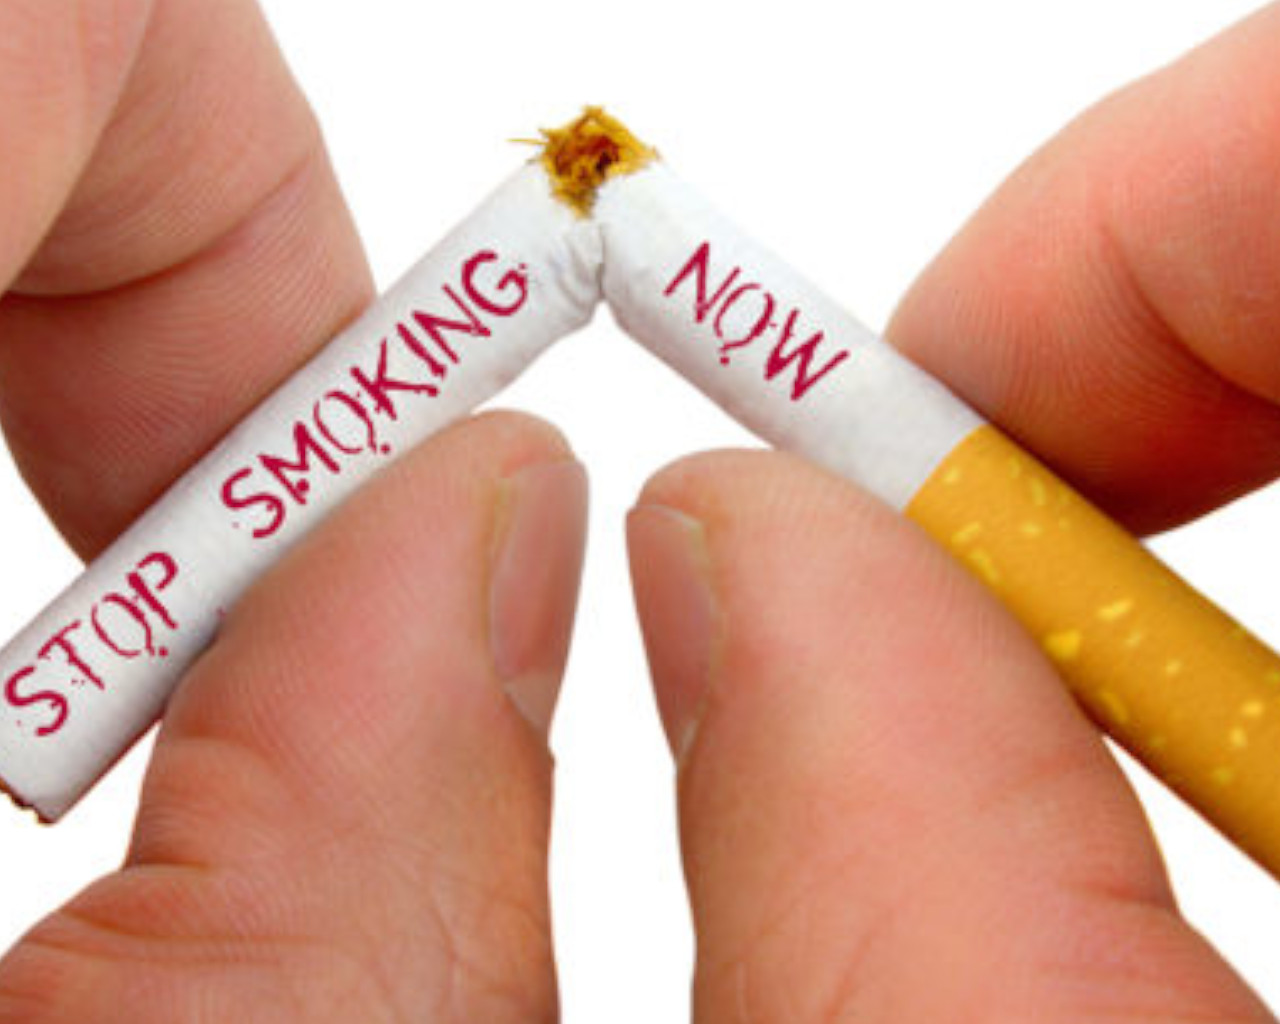 καπνισμα,καπνισμα και κορονοιοσ,καπνισμα διακοπη,καπνισμα ονειροκριτησ,καπνισμα και εγκυμοσυνη,καπνισμα και σεροτονινη,καπνισμα σε εξωτερικουσ χωρουσ,καπνισμα κρεατοσ,καπνισμα και θηλασμοσ